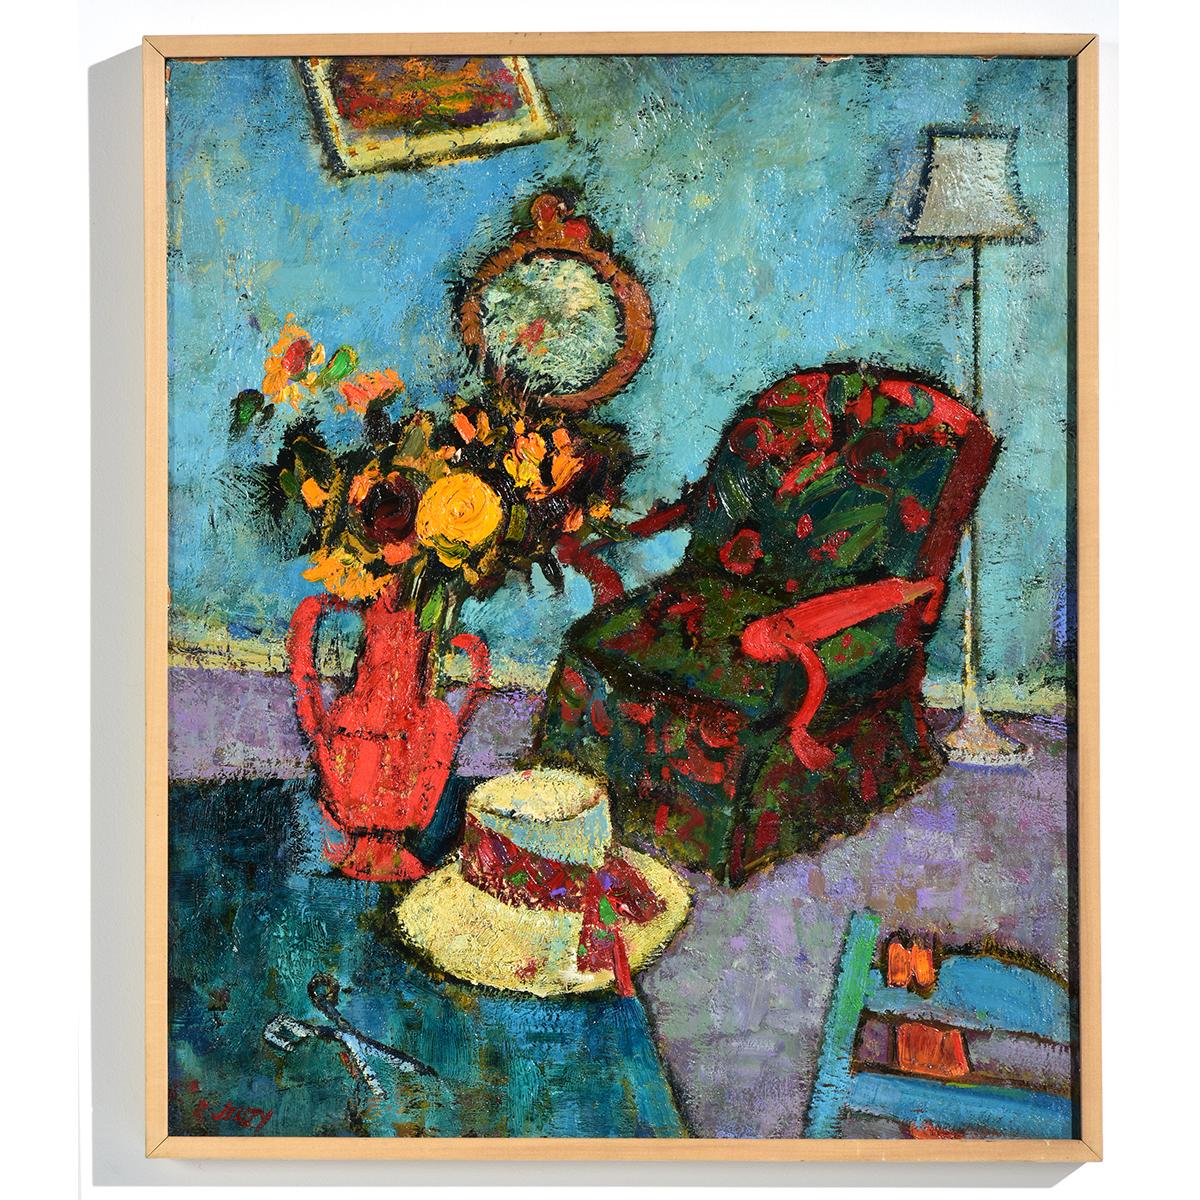 Aquarelle « Red Chair » intérieur avec fleurs et chaise de Richard Jerzy